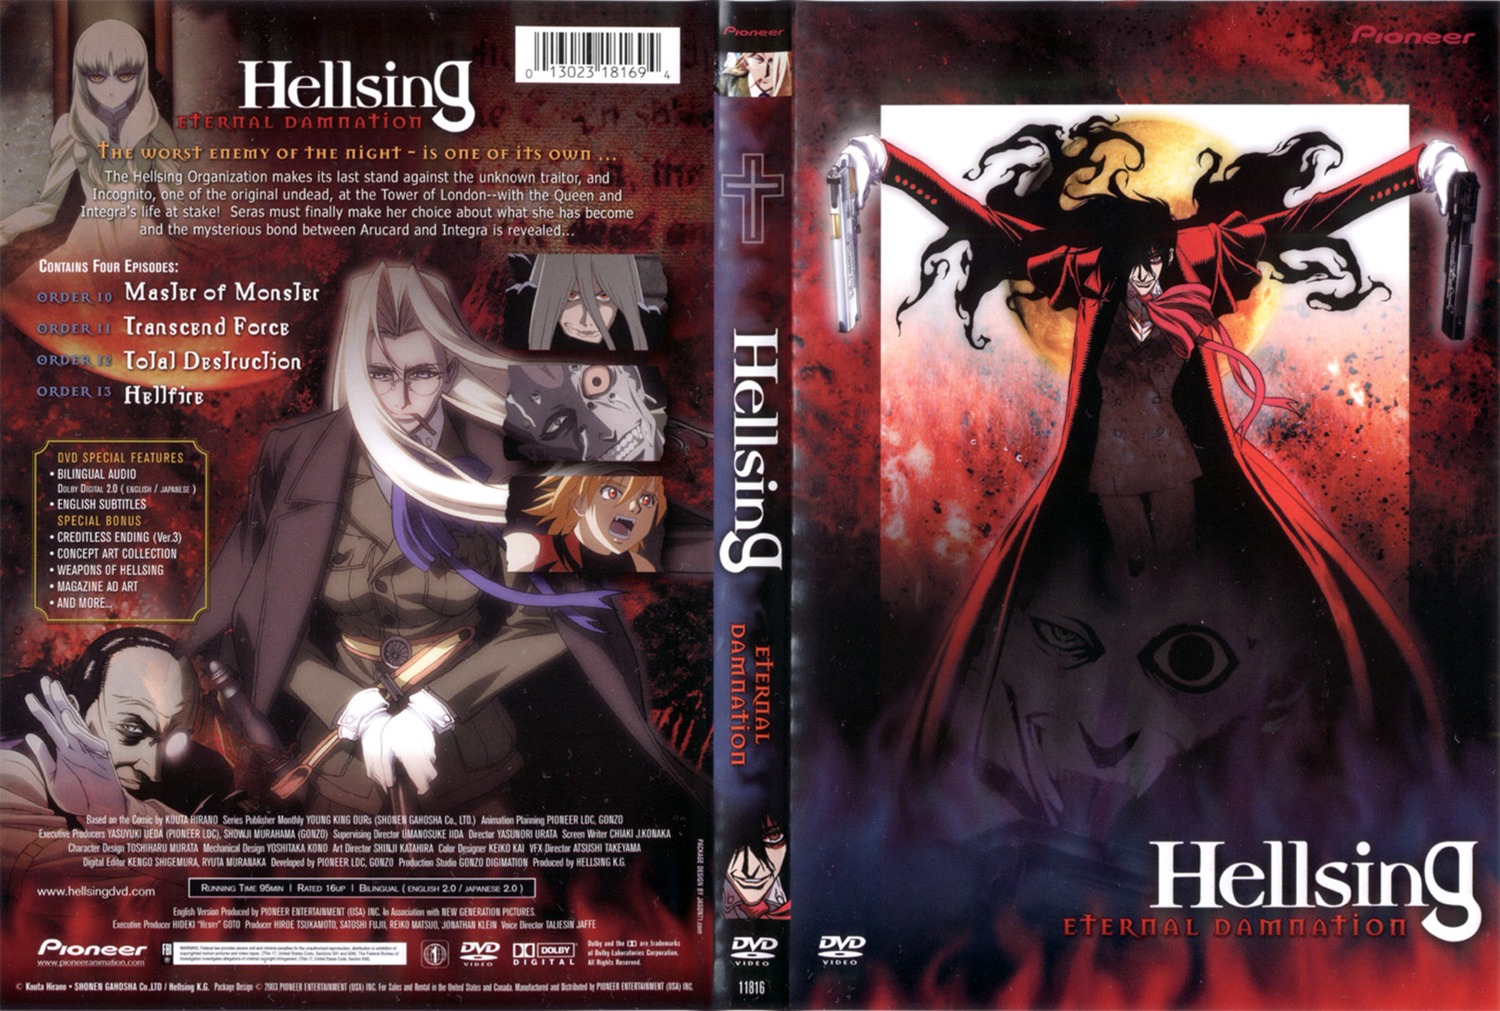 Pin on Hellsing - Alucard x Integra